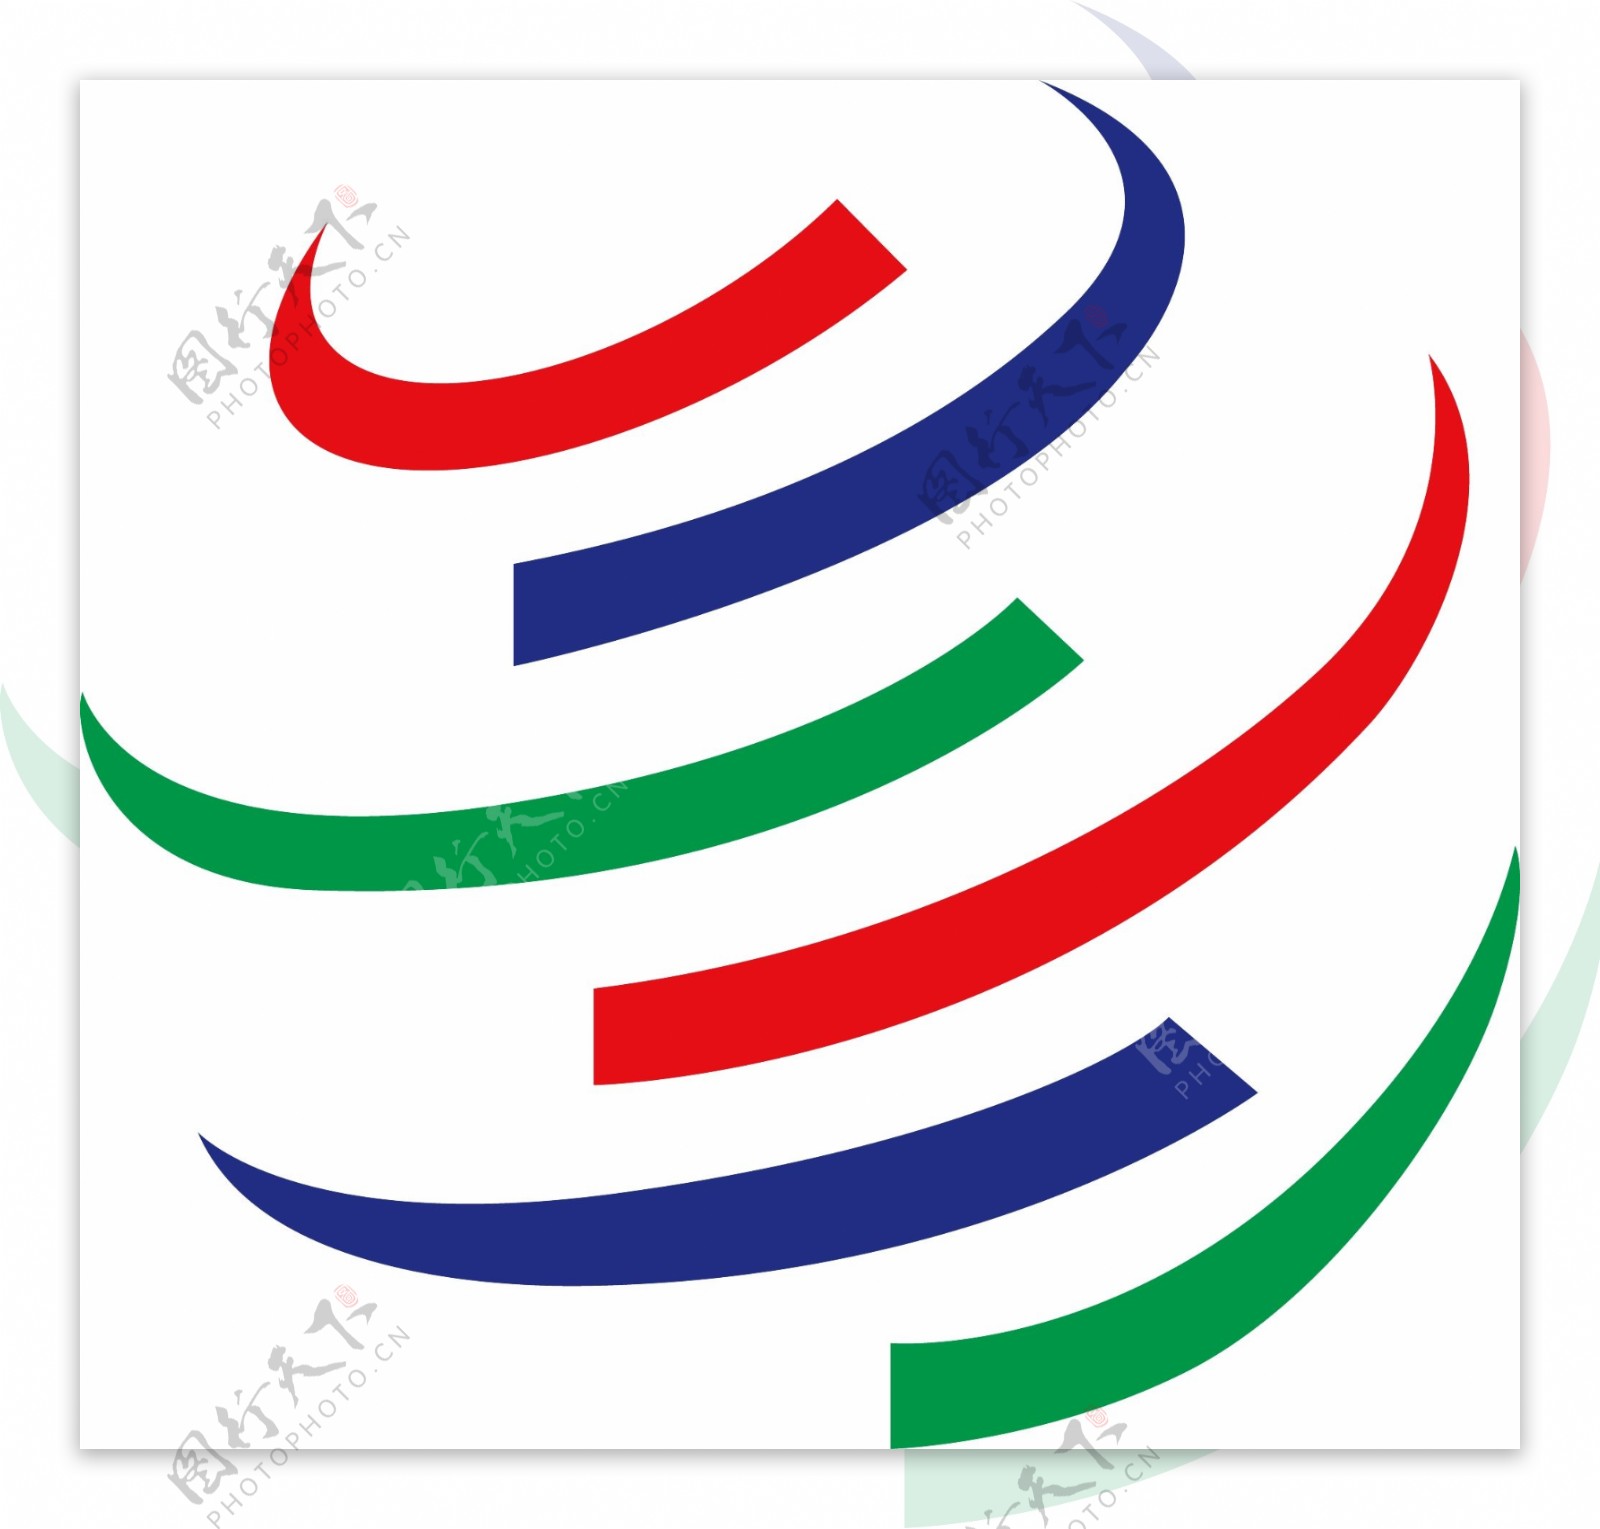 wtologo世界贸易组织logo图片